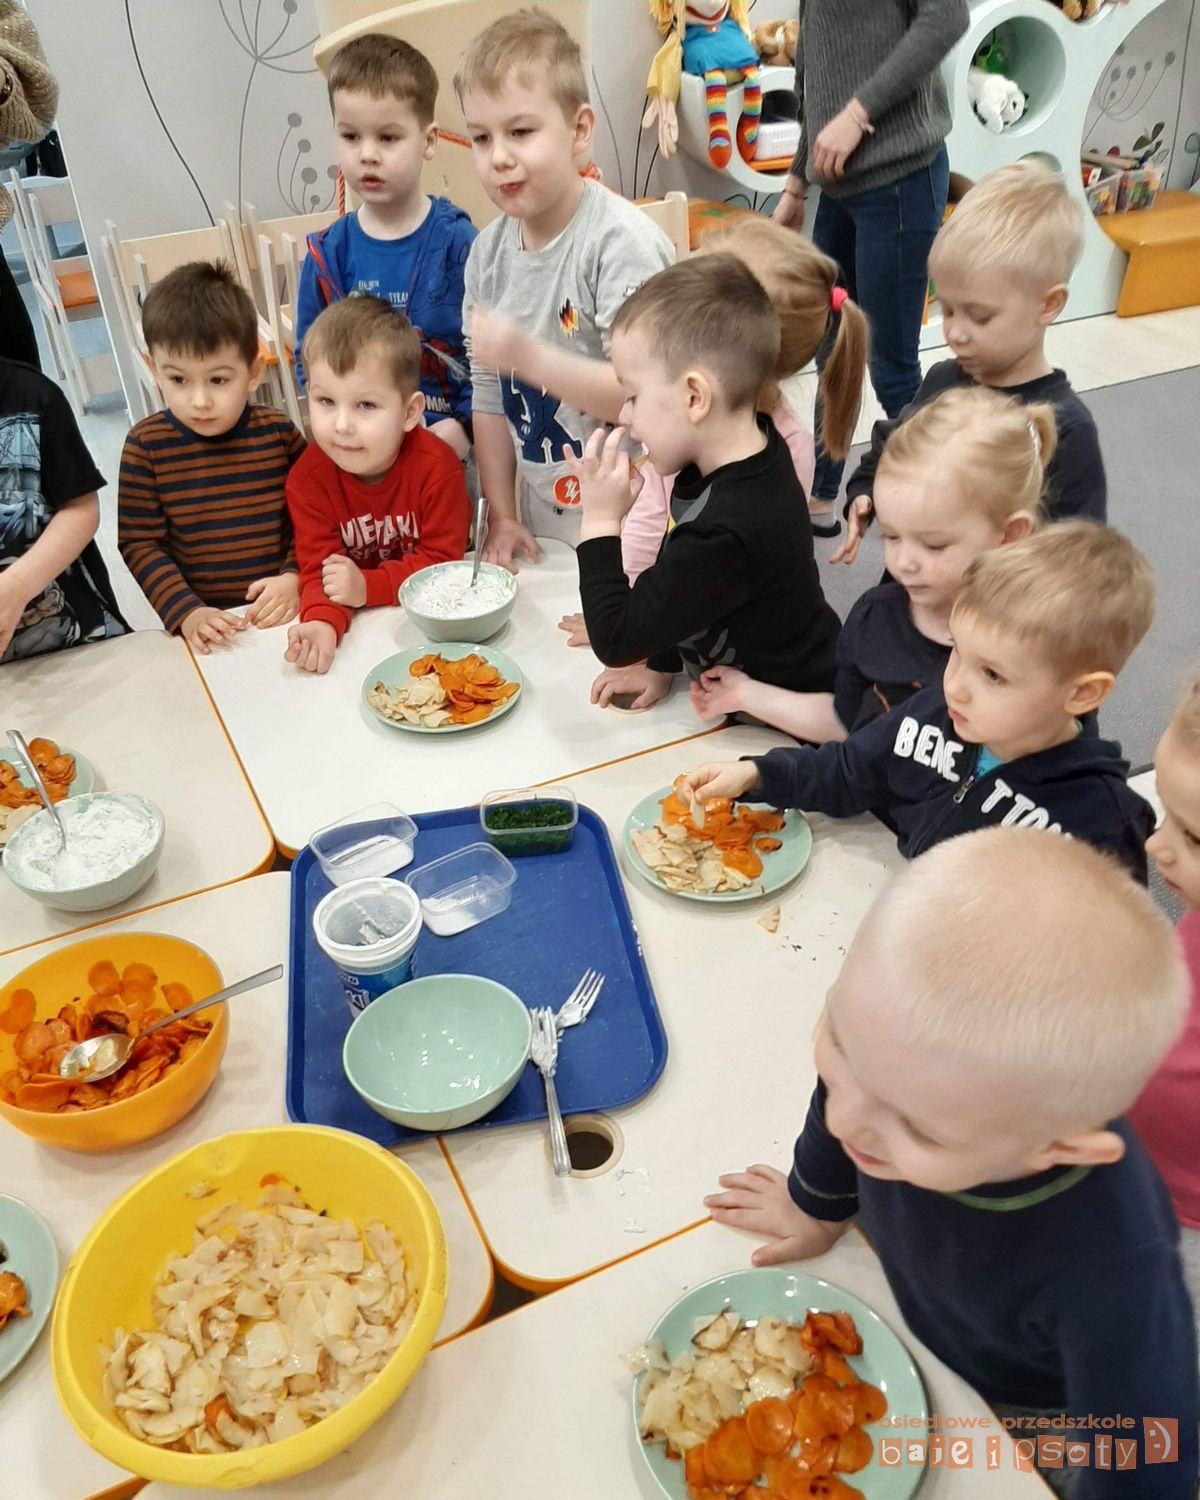 W środę 22 stycznia na warsztatach kulinarnych dzieci miały okazję przygotować zdrowe chipsy warzywne z dipem jogurtowo-ogórkowym